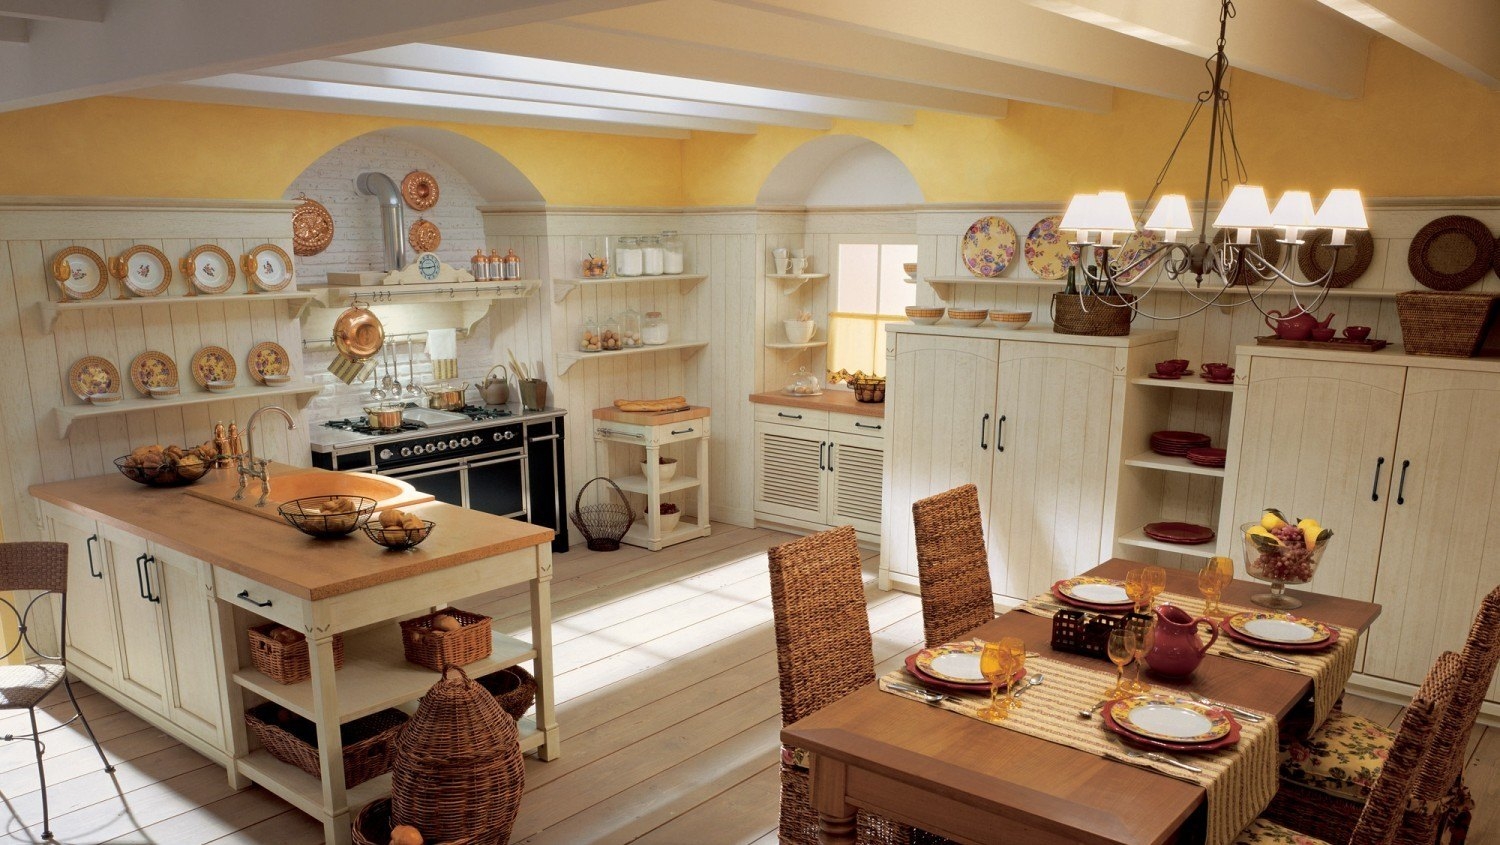 Дизайн кухни-столовой в деревенском стиле » Картинки и фотографии .